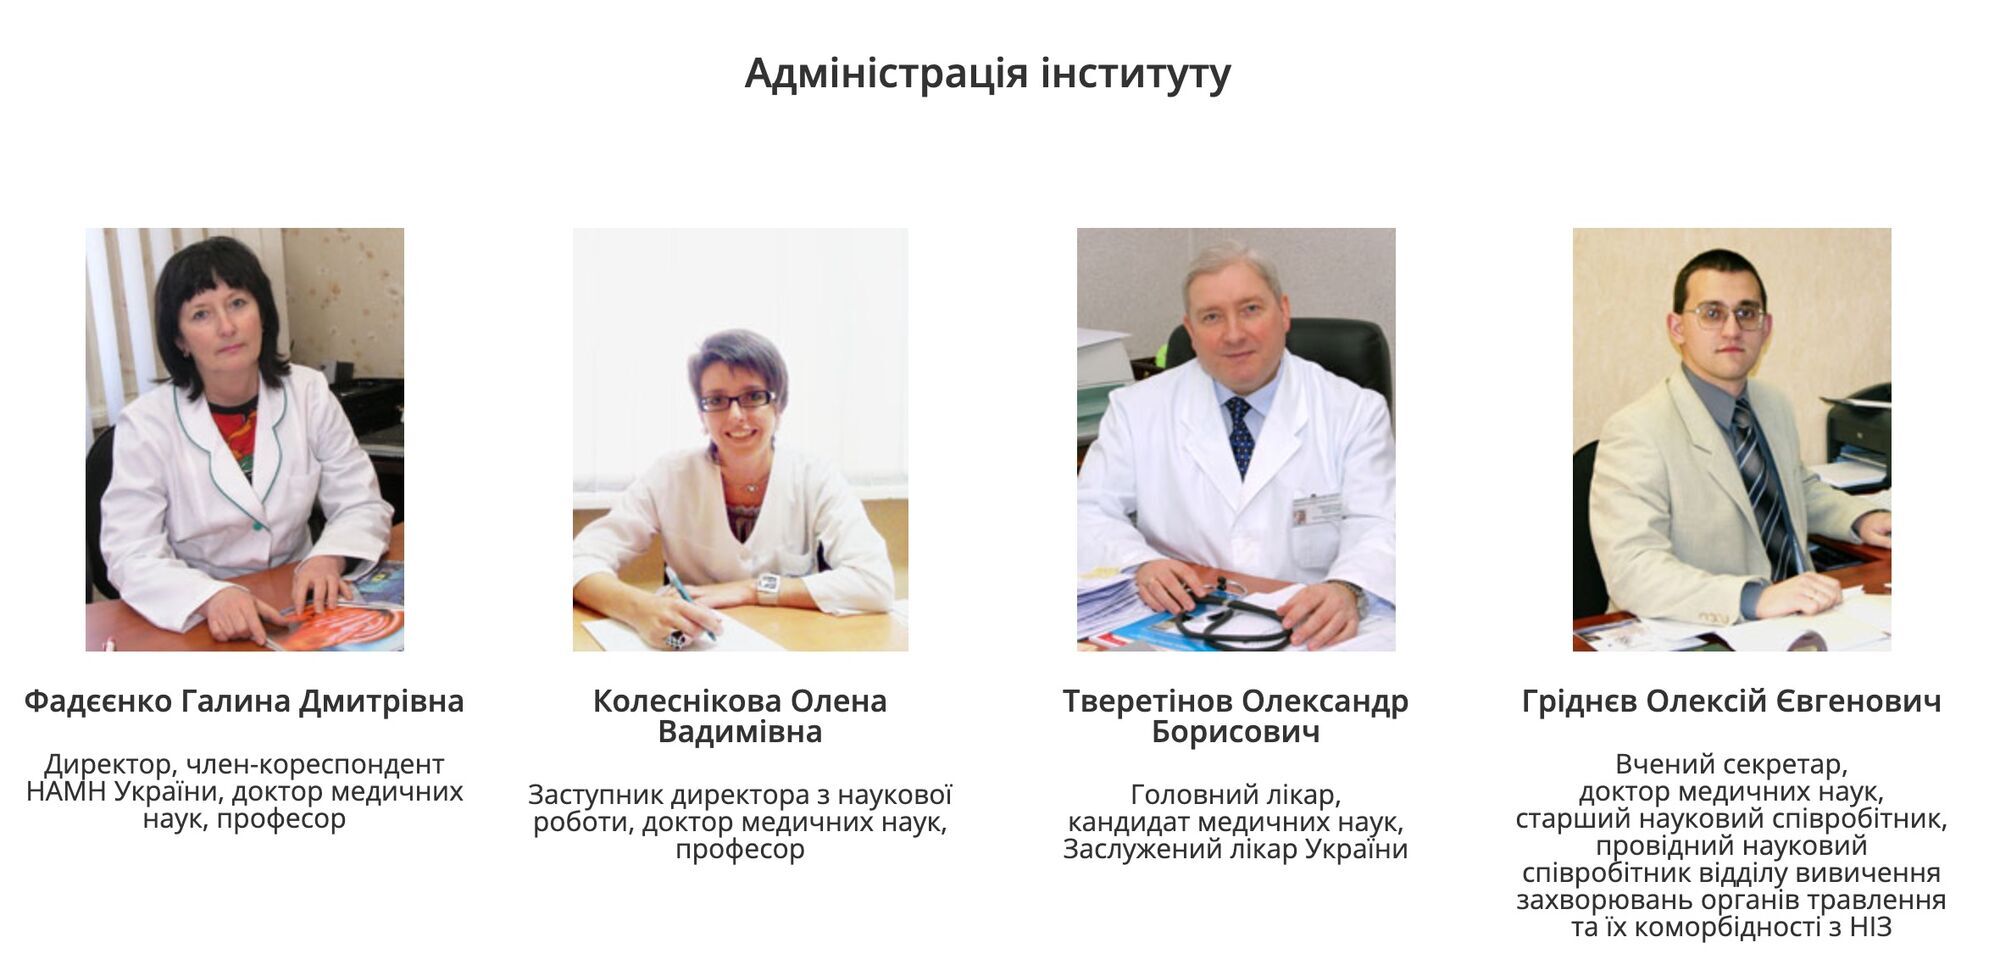 Администрация ГУ ''Национальный институт терапии имени Л.T. Малой НАМН Украины''